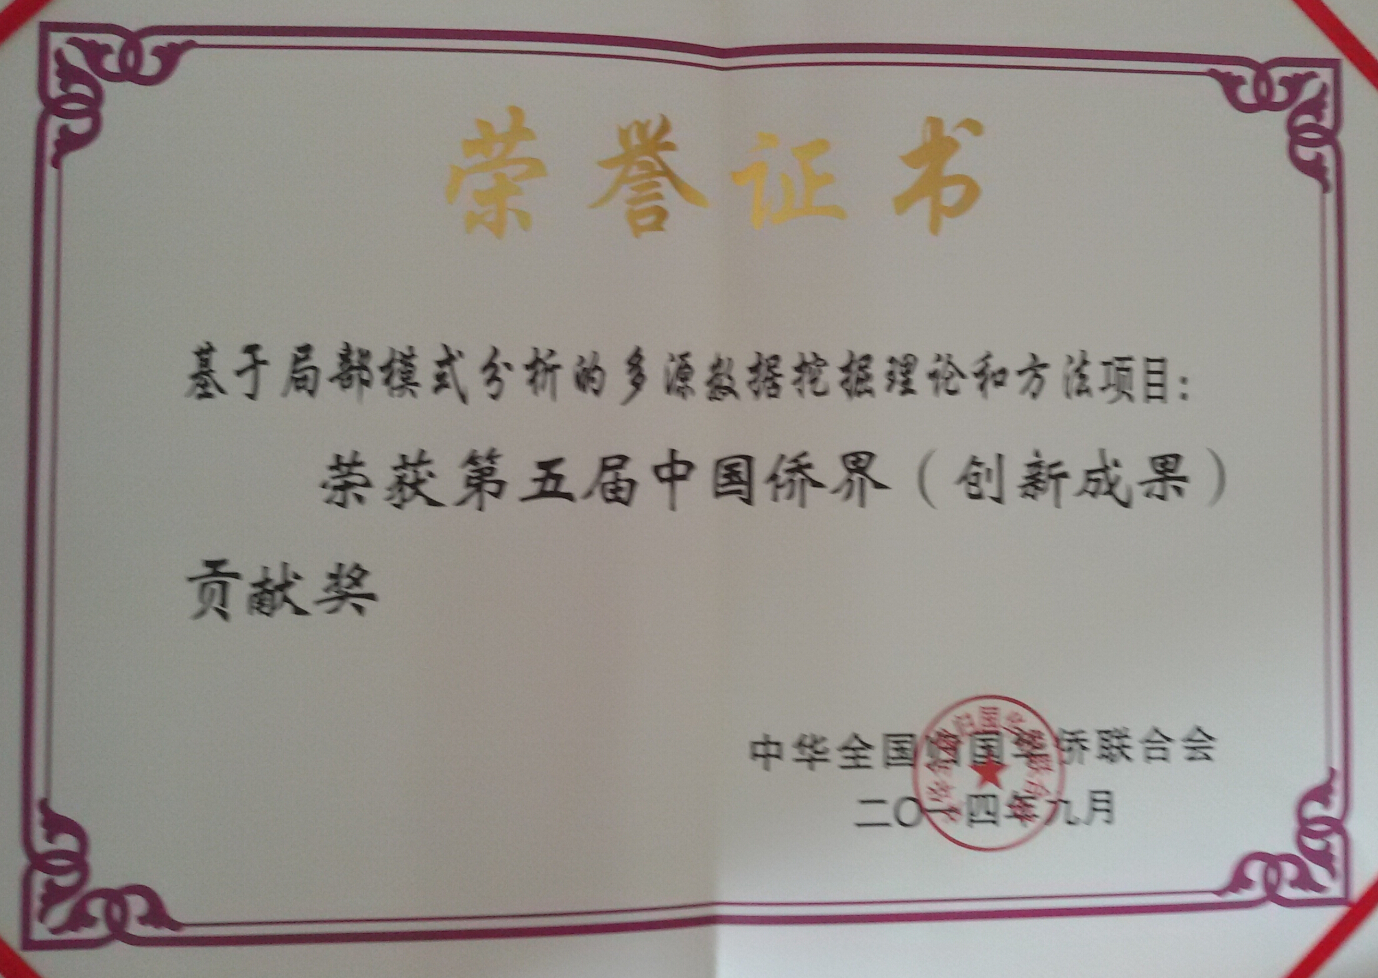 张师超教授科研项目获得第五届中国侨界贡献奖创新成果奖